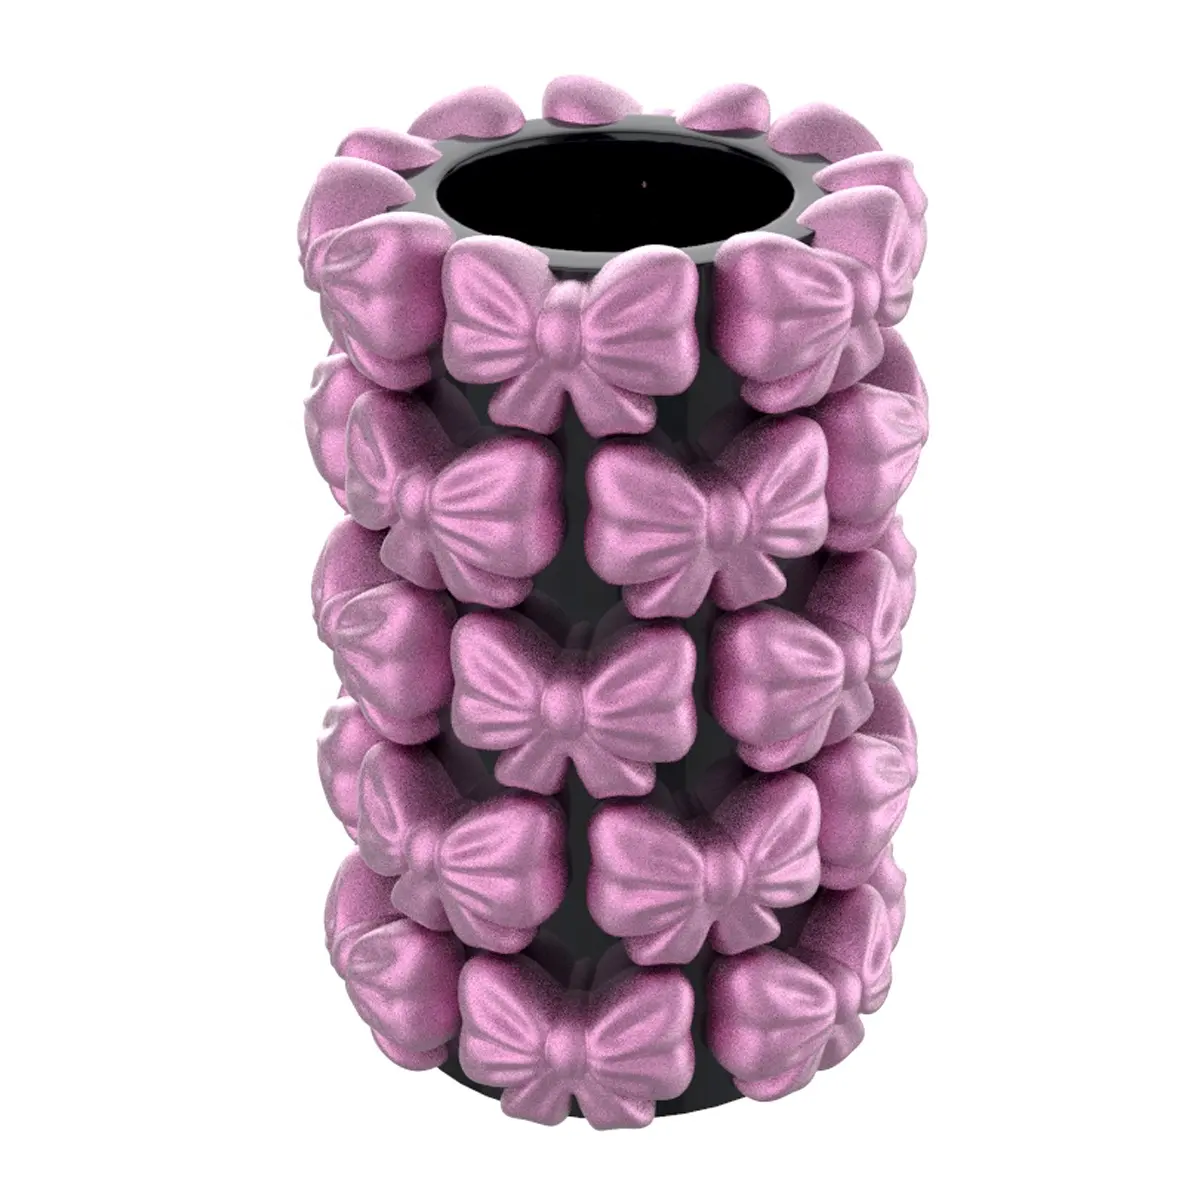 カスタム形状の著作権で保護されたオリジナルの創造的な美的インテリア弓デザイン家の装飾黒とピンクのセラミック蝶結び花瓶